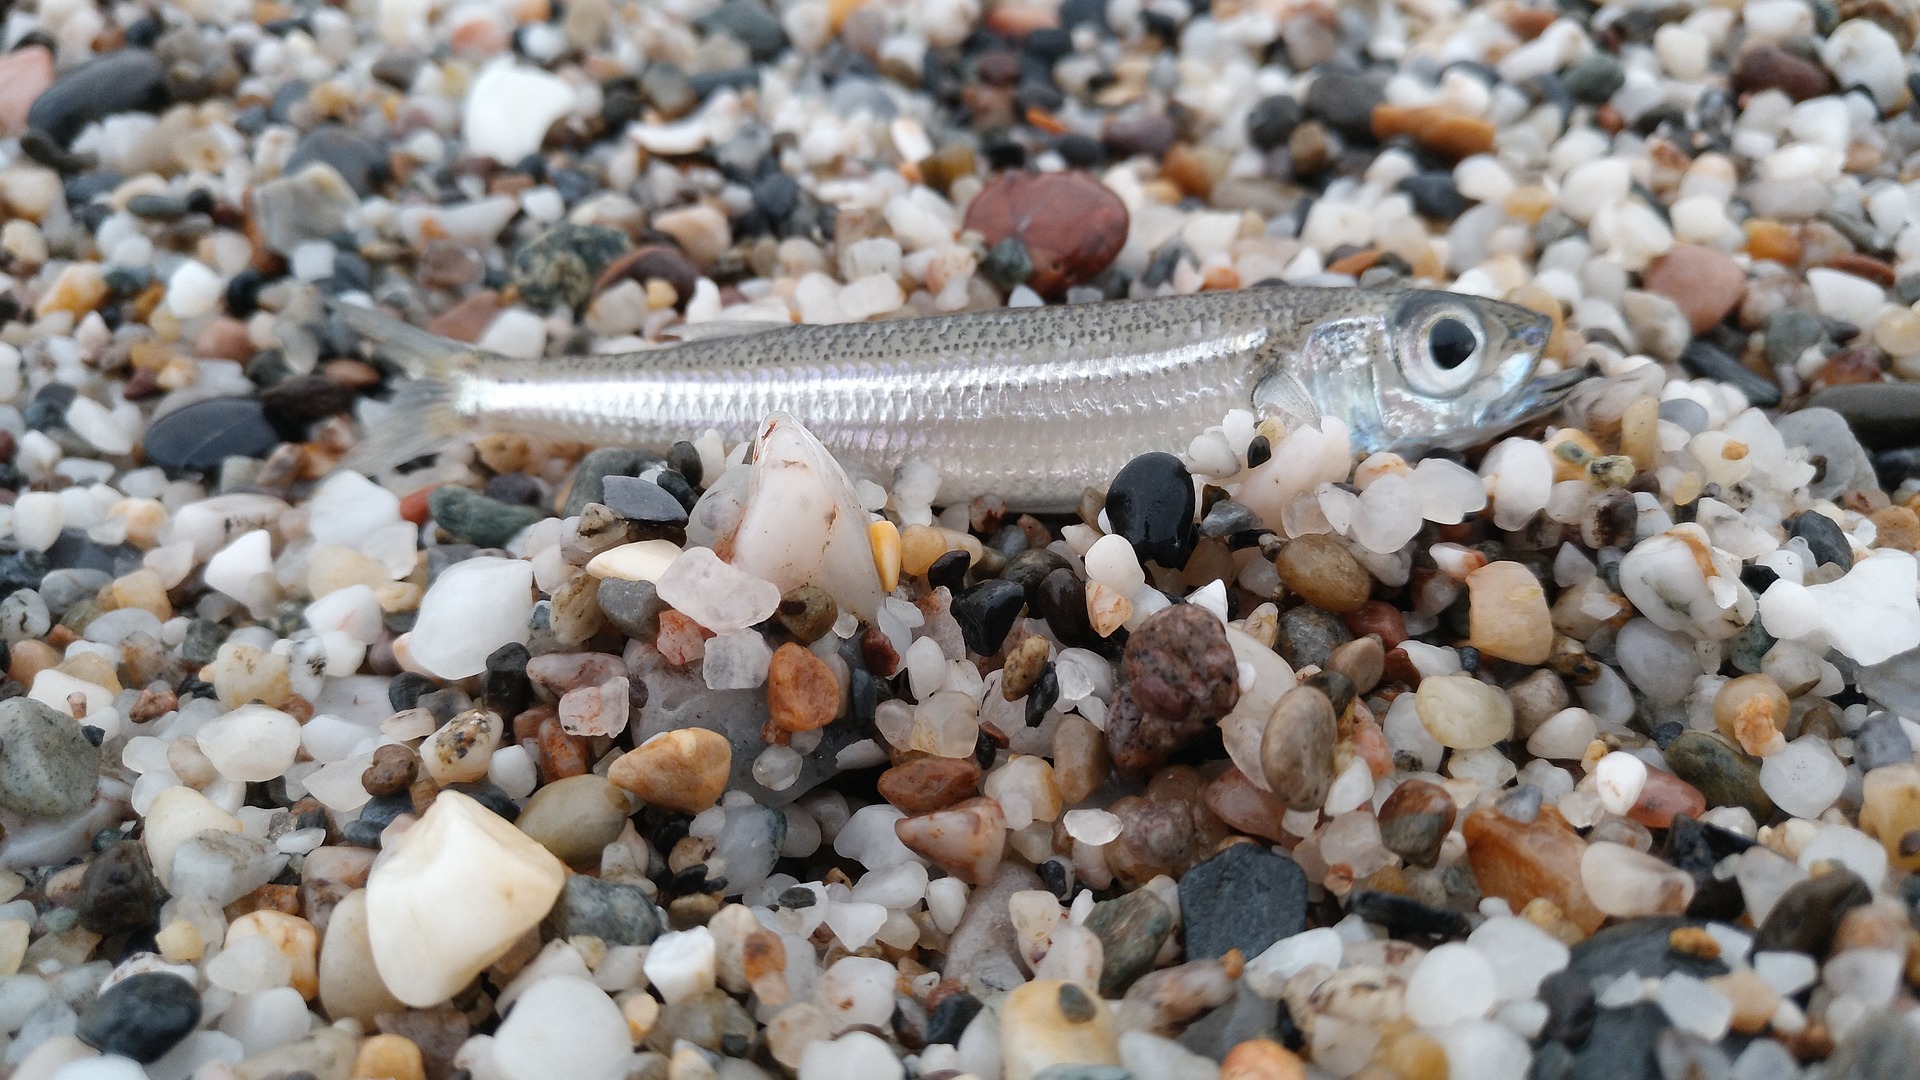 Рыба песчанка фото и описание